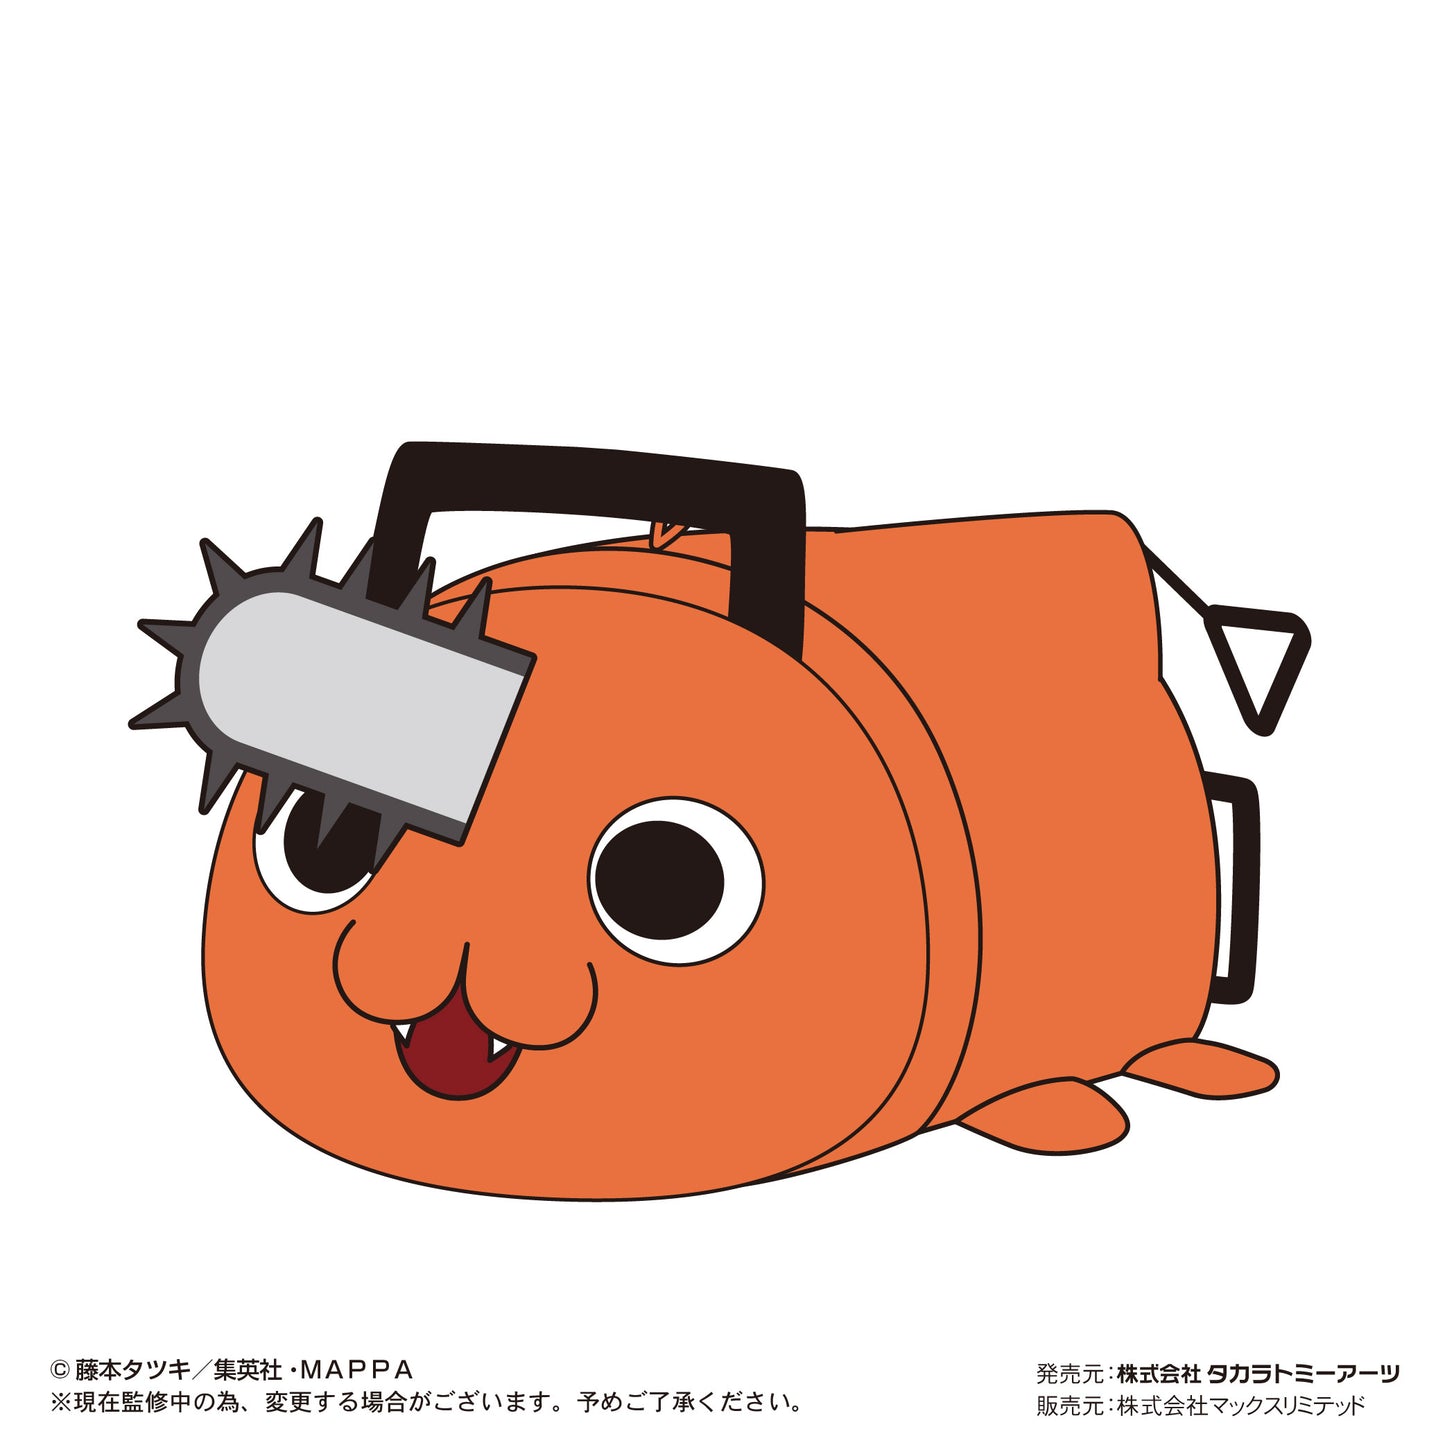 (Pre-Order) Chainsaw Man - PoteKoro Mascot Plush